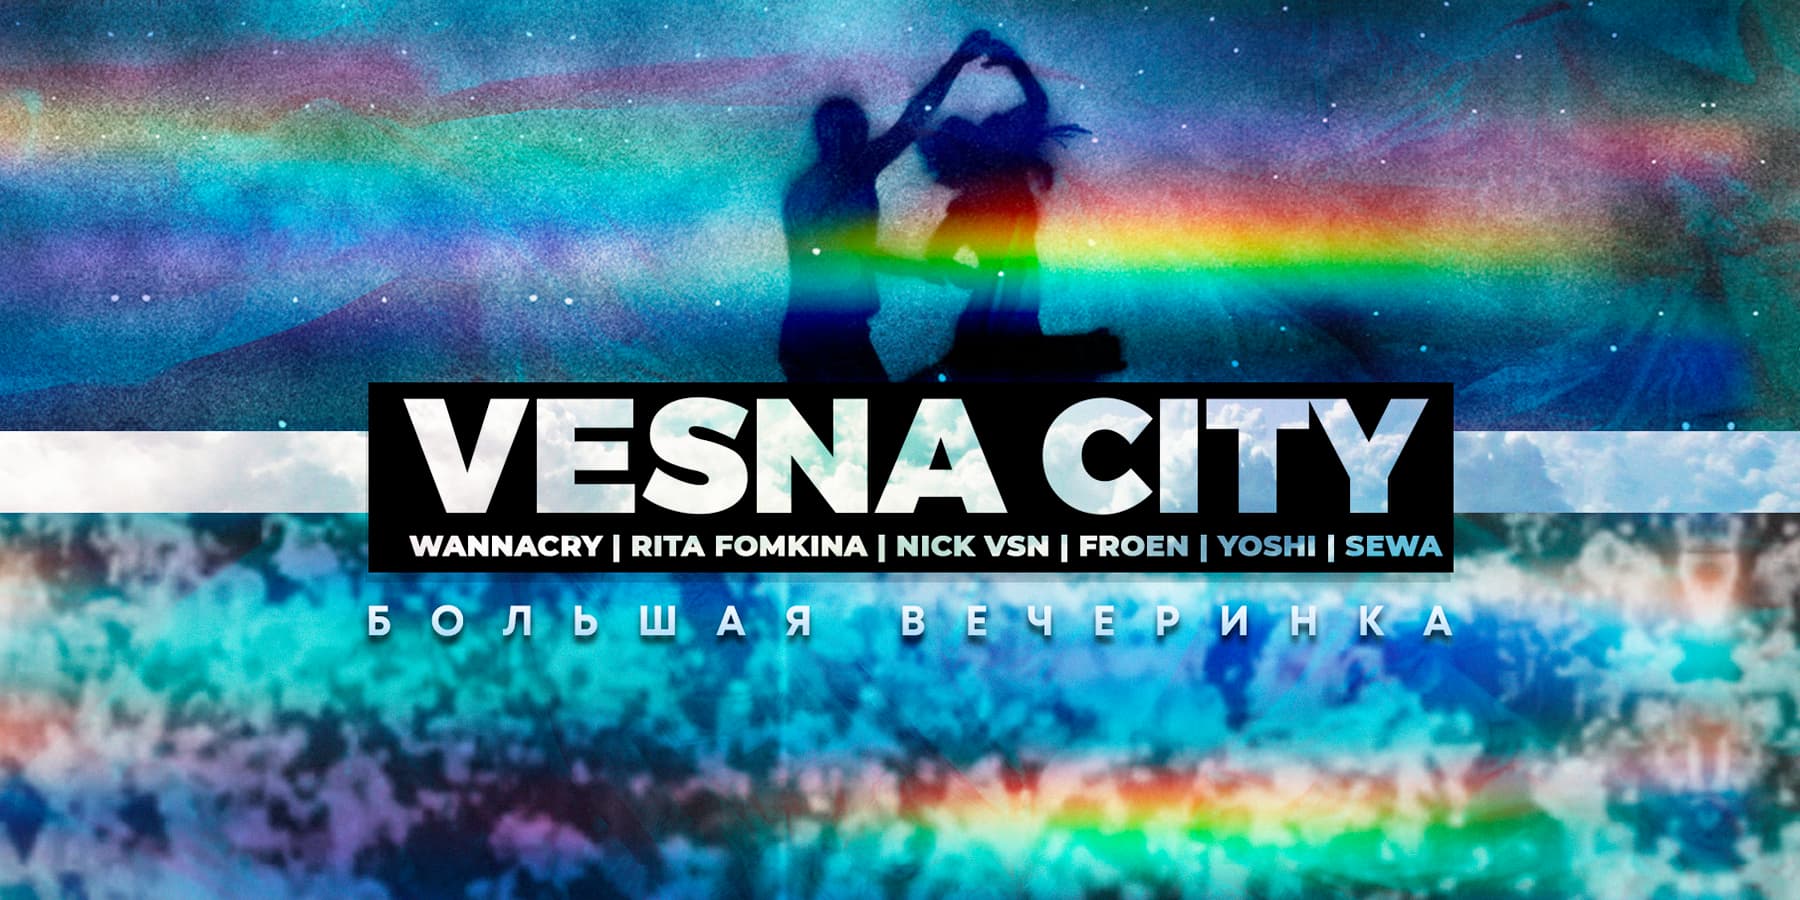 Vesna City